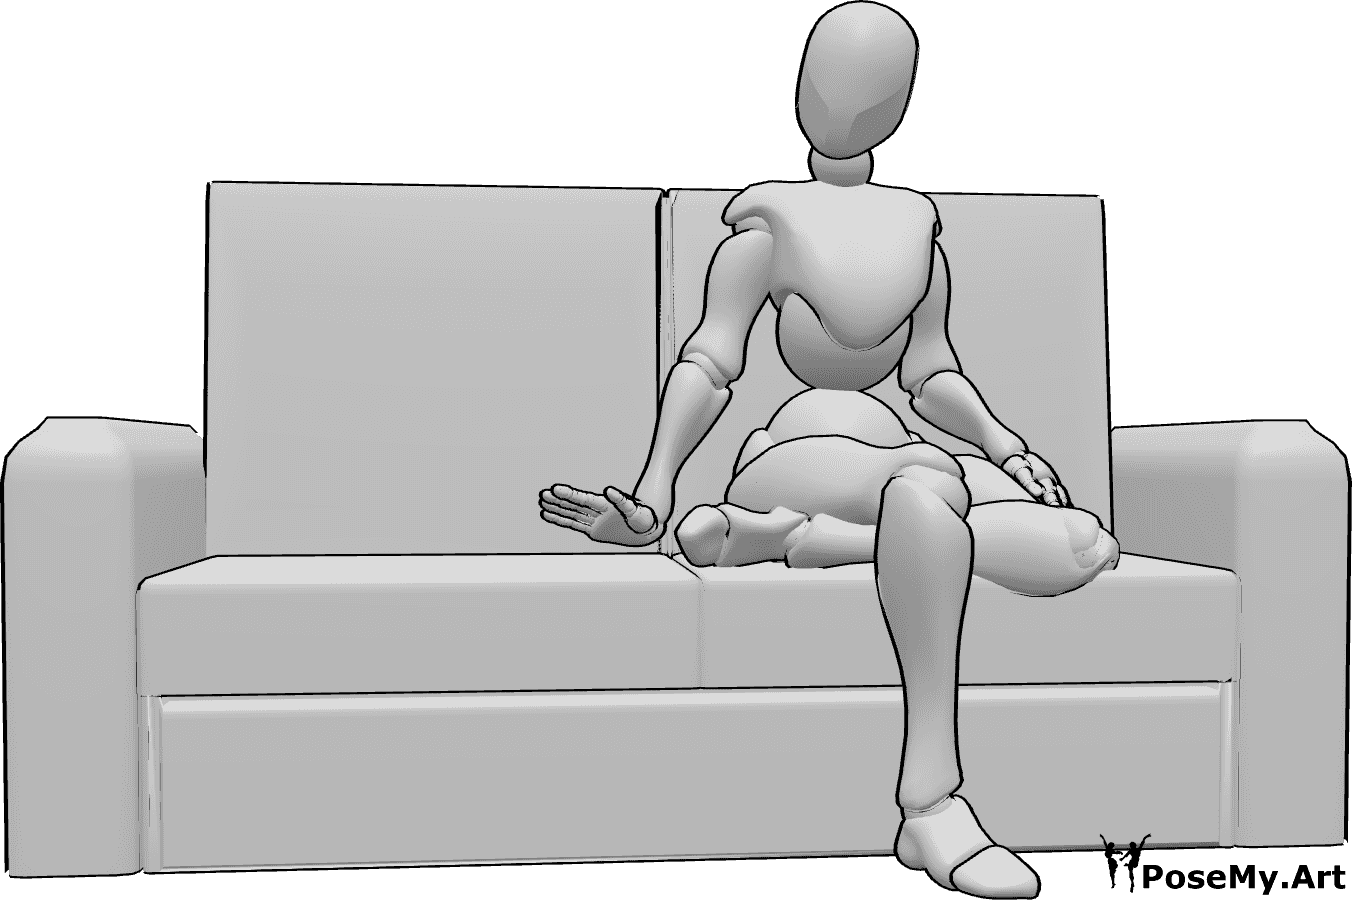 Posen-Referenz- Weibliche einladende Sitzhaltung - Frau sitzt mit gekreuzten Beinen auf der Couch und lädt ein, Platz zu nehmen